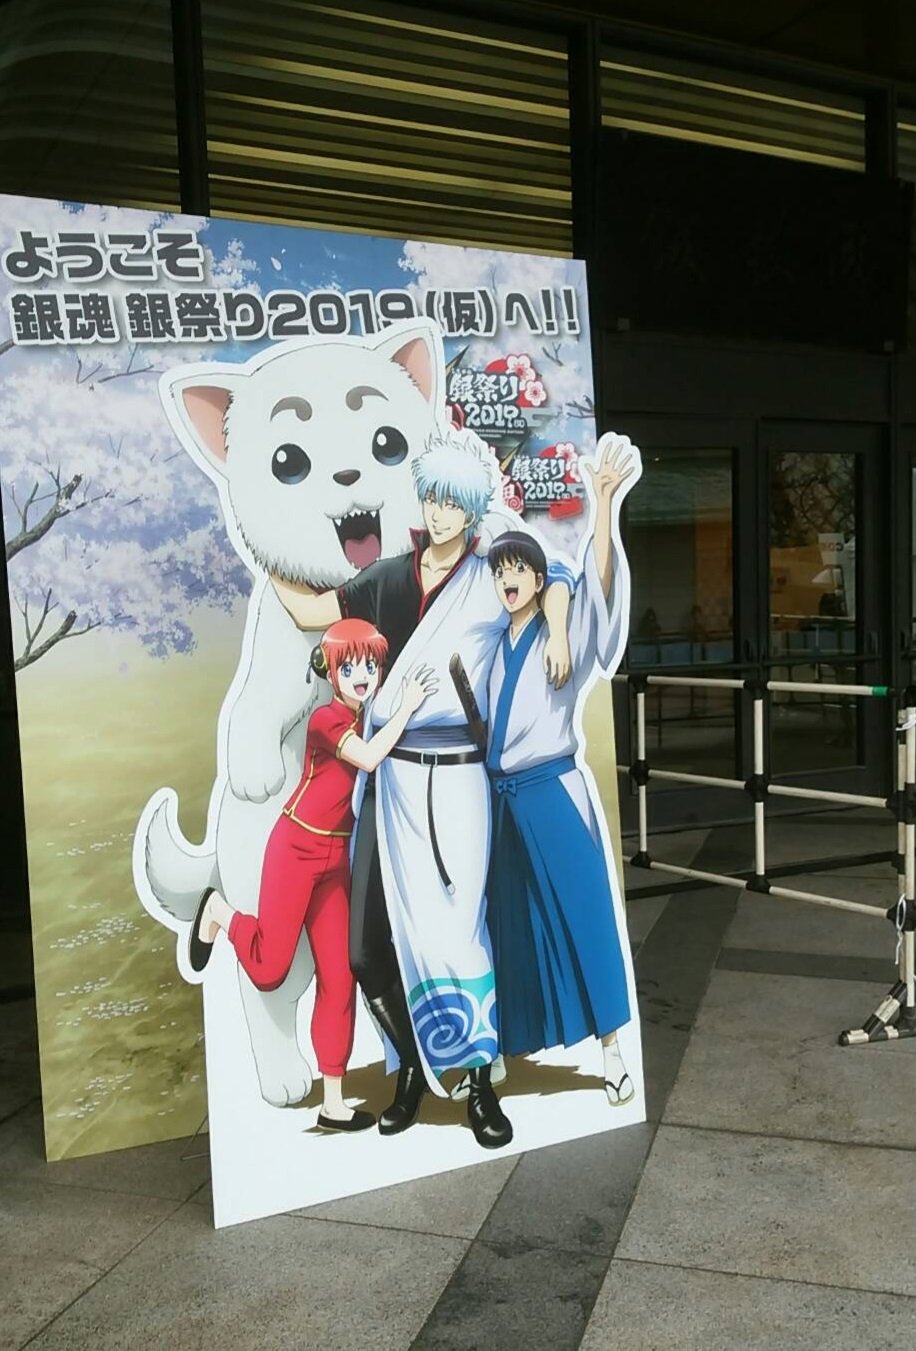 銀魂 銀祭り19 仮 Gintamaevent Twitter